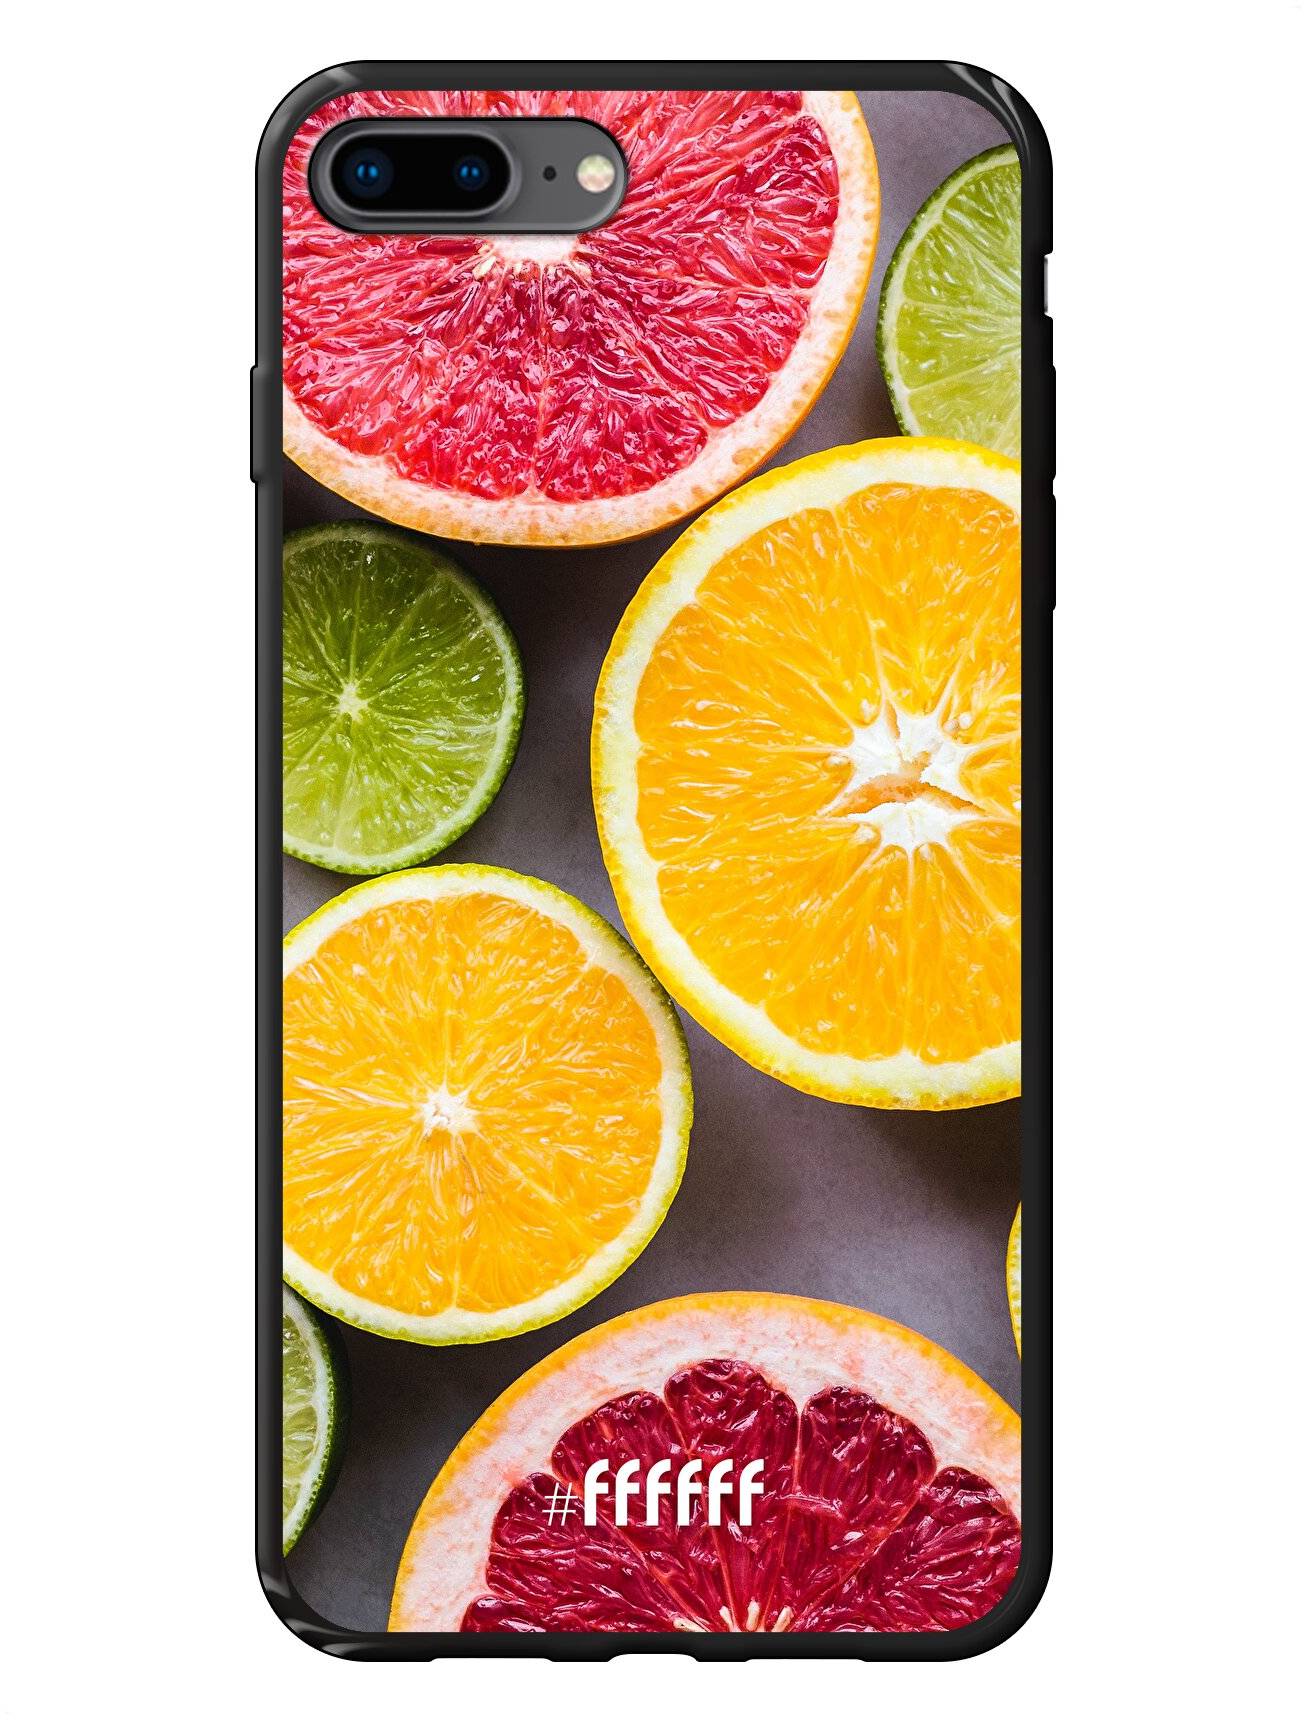 Citrus Fruit iPhone 8 Plus